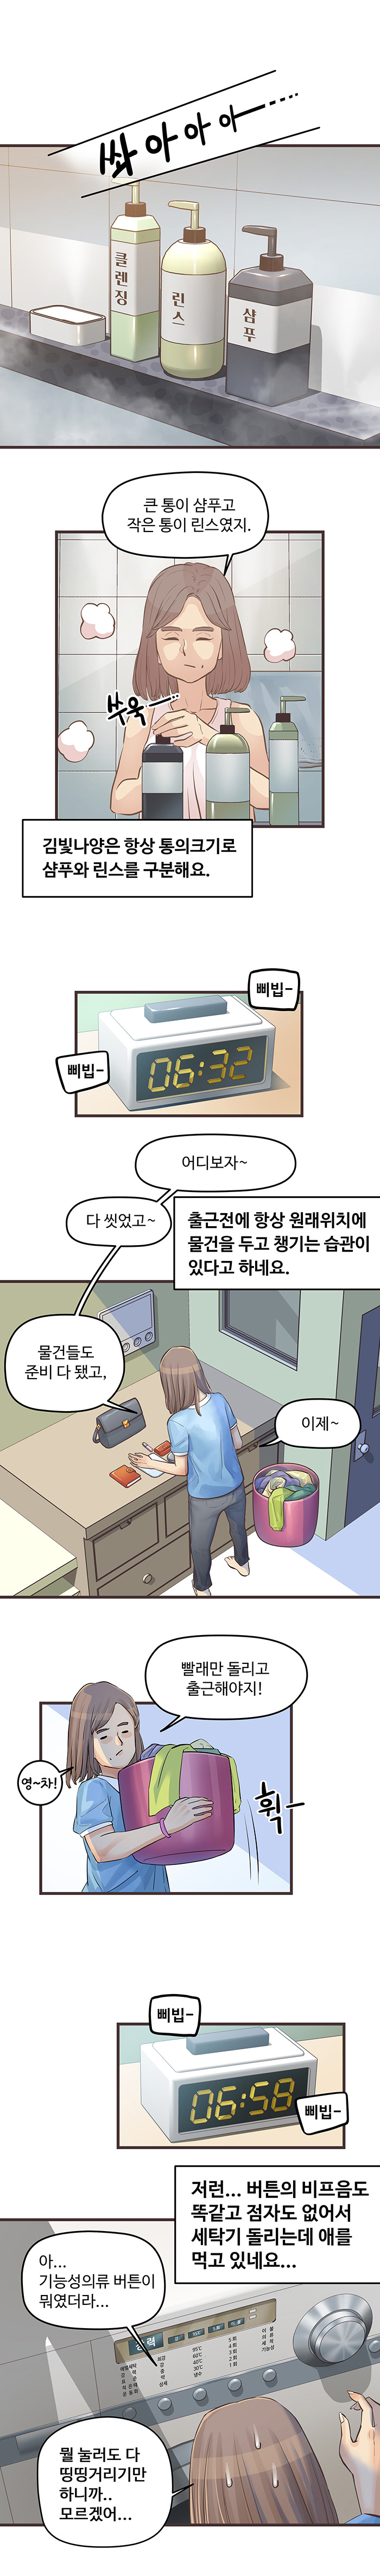 중증시각장애인 김빛나 웹툰 2화. 원고는 하단을 참조하세요.